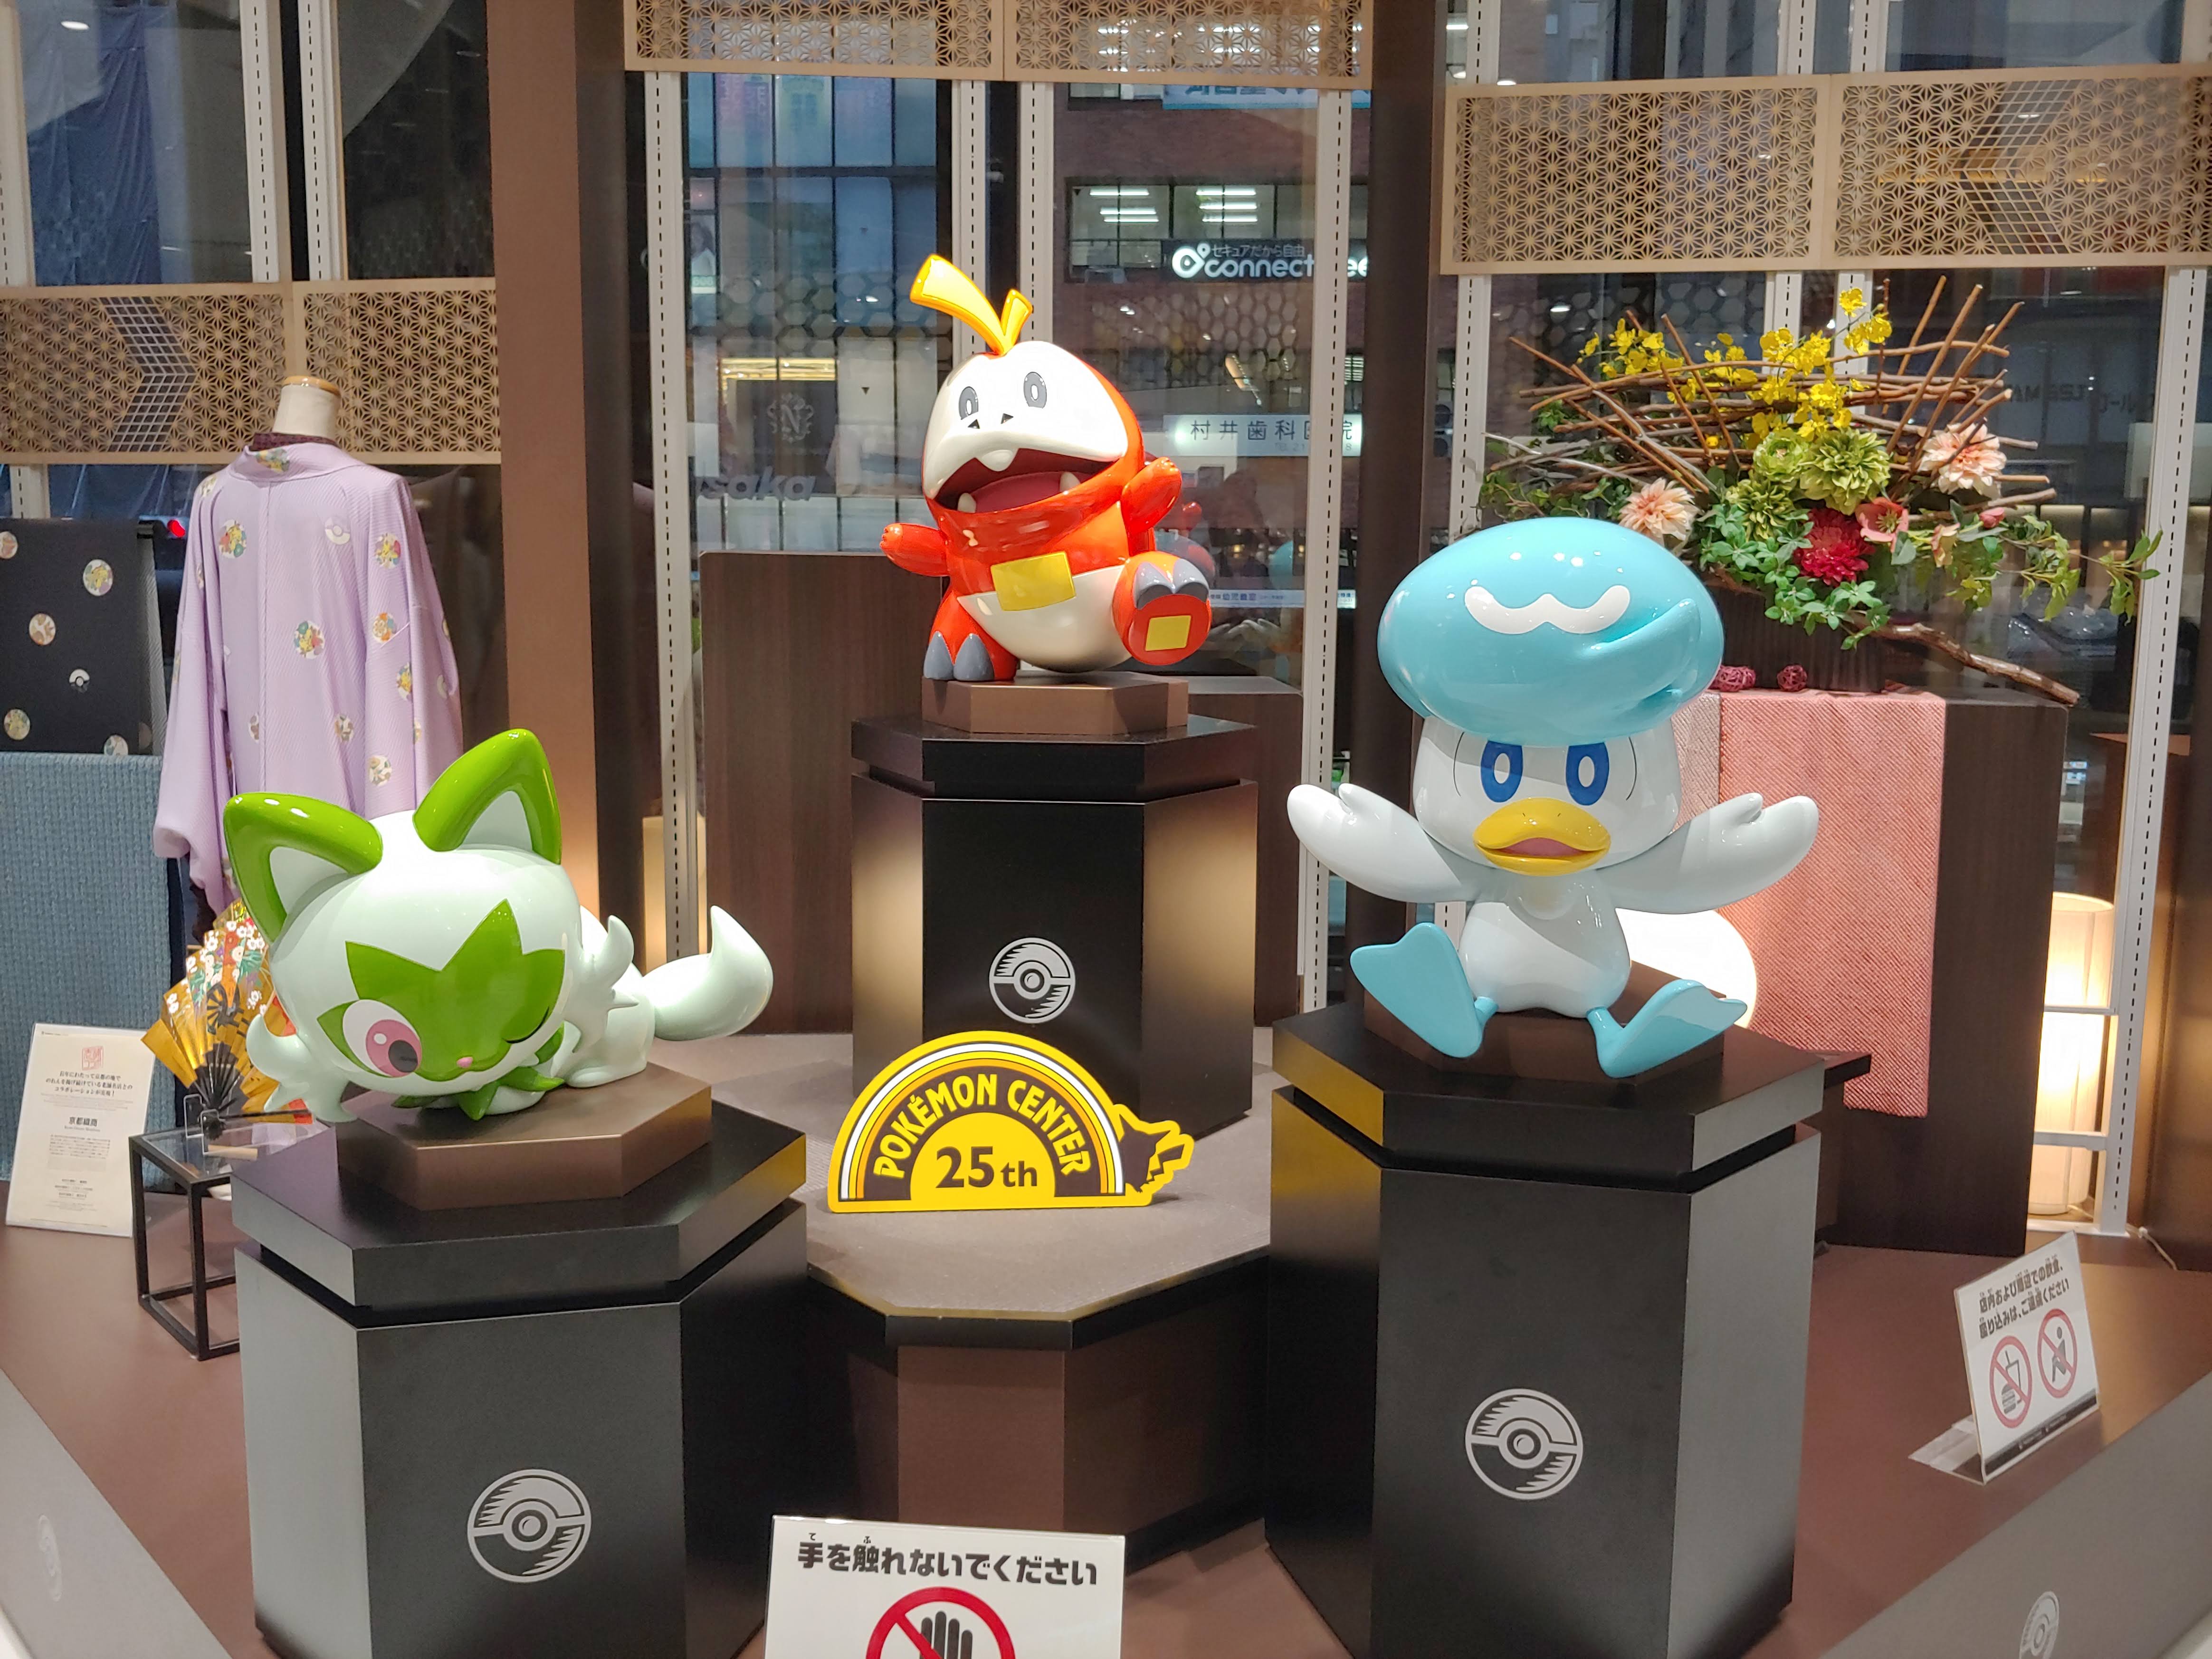 Pokemon Center Kyoto! Come take a look around! 